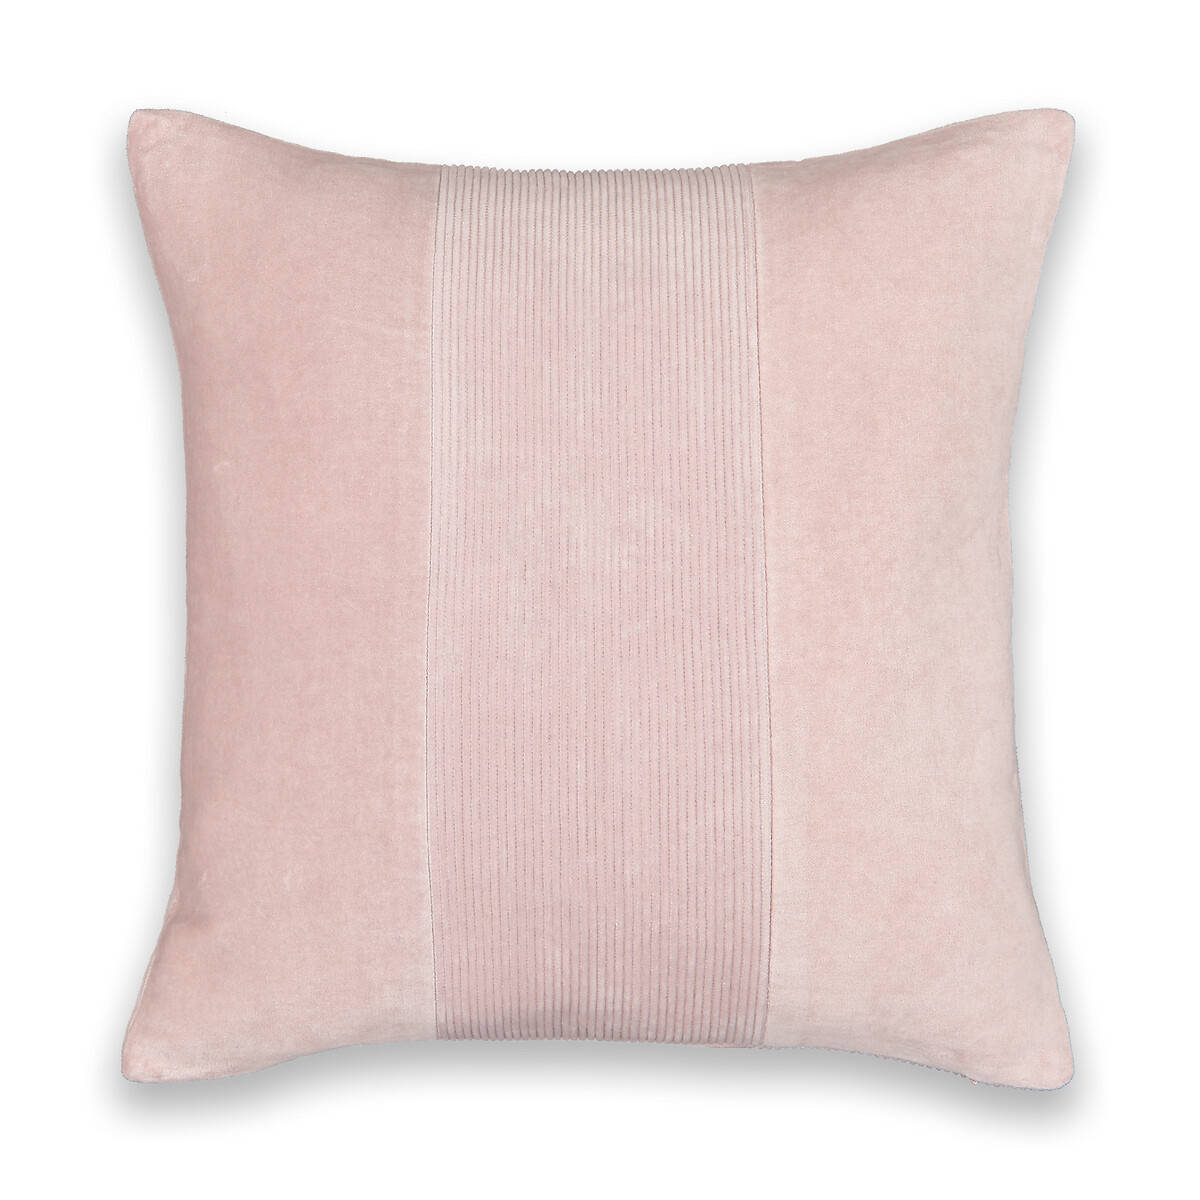 Чехол На подушку Darlington 50 x 30 см розовый